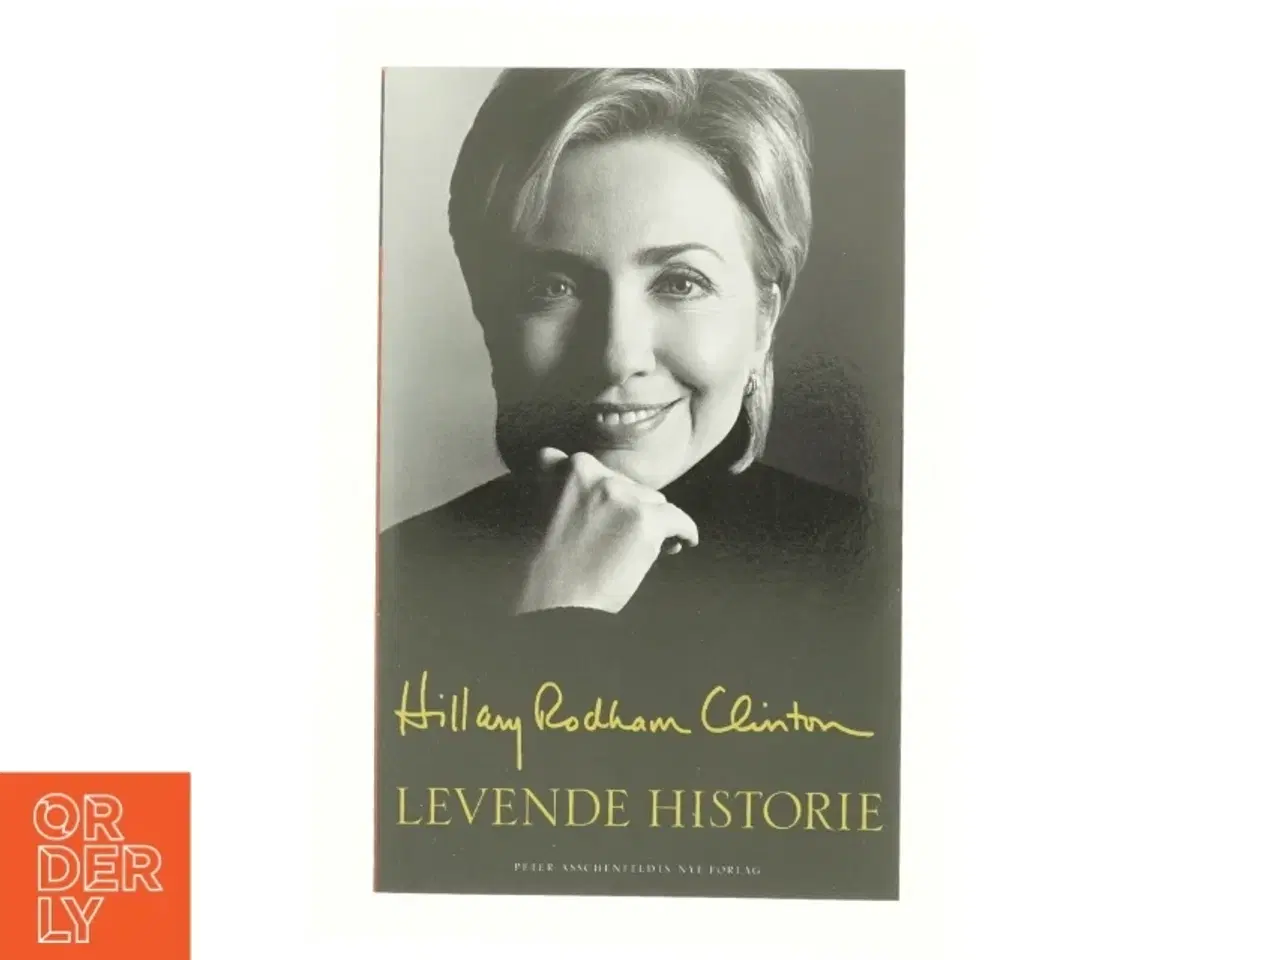 Billede 1 - Levende historie af Hillary Rodham Clinton (Bog)